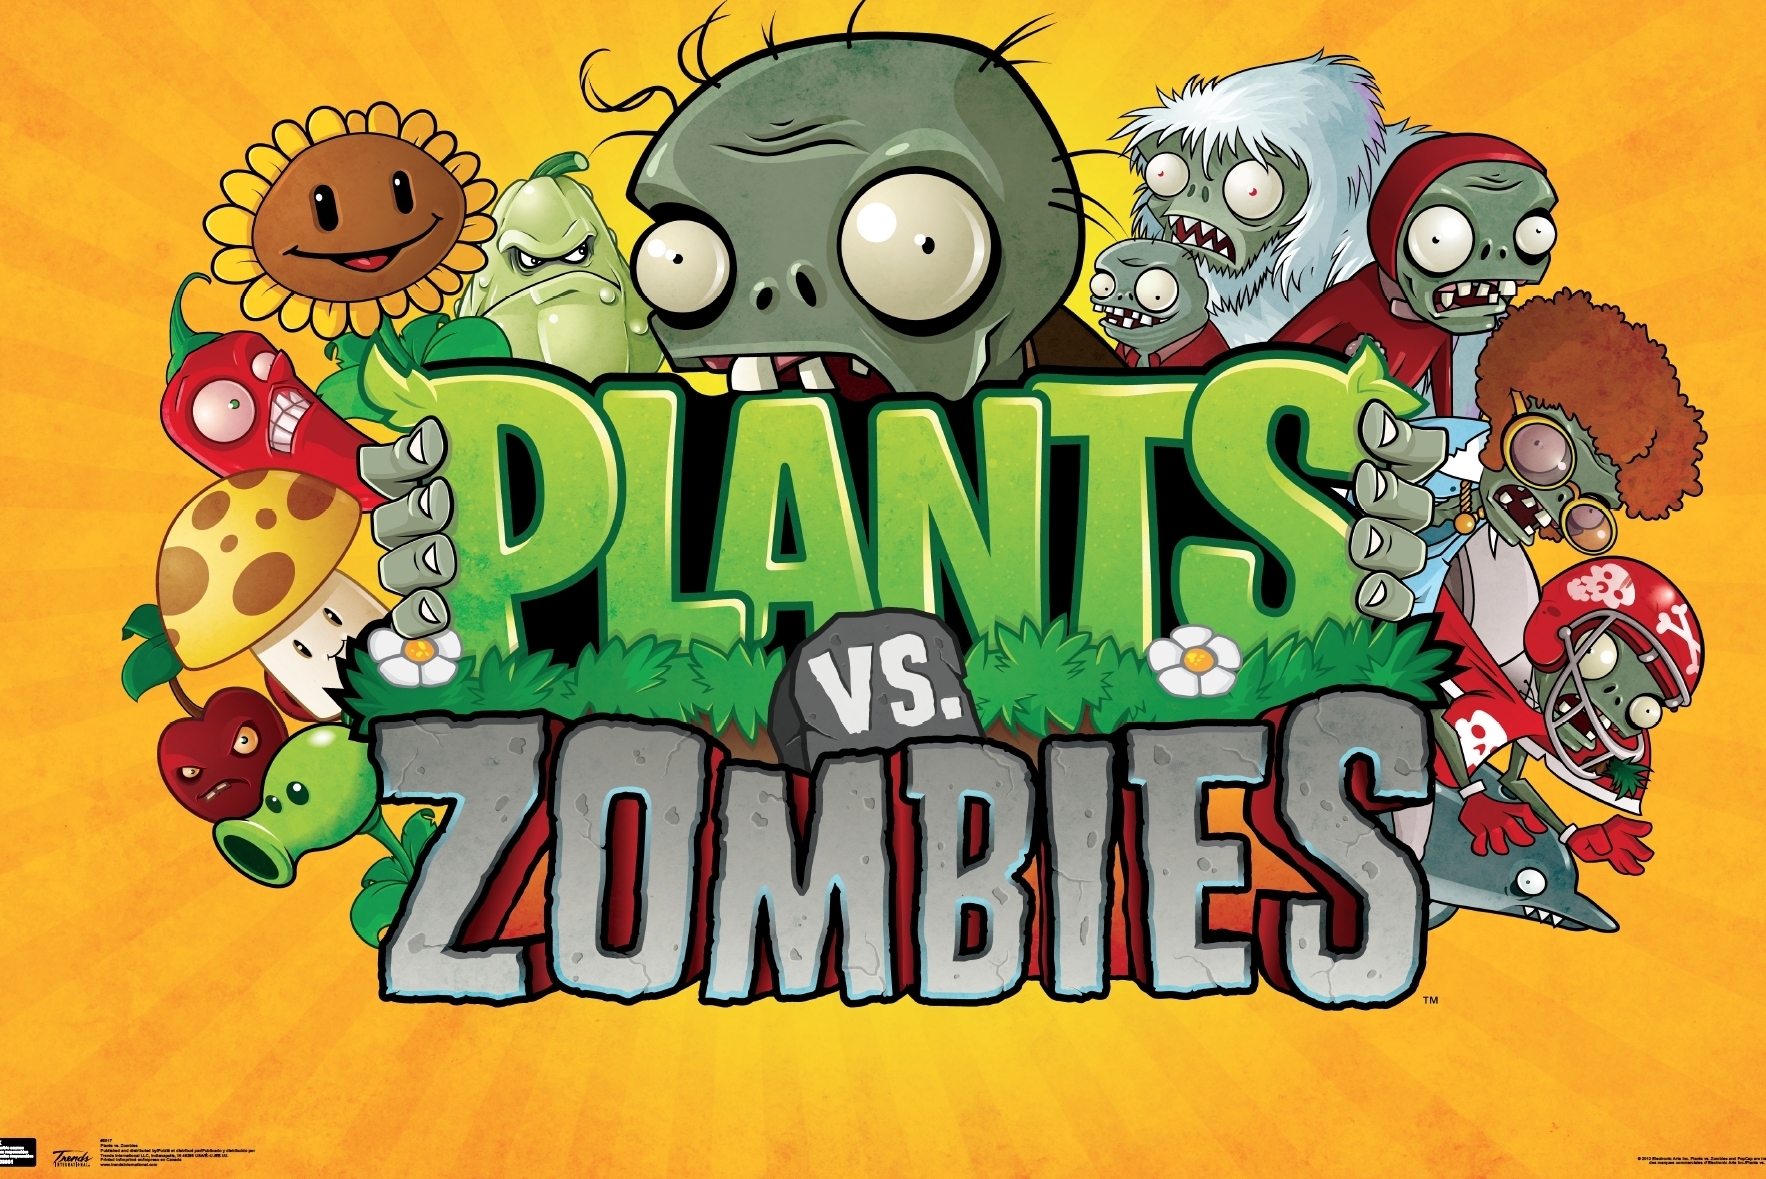 48+] Plant vs Zombies Wallpaper - WallpaperSafari